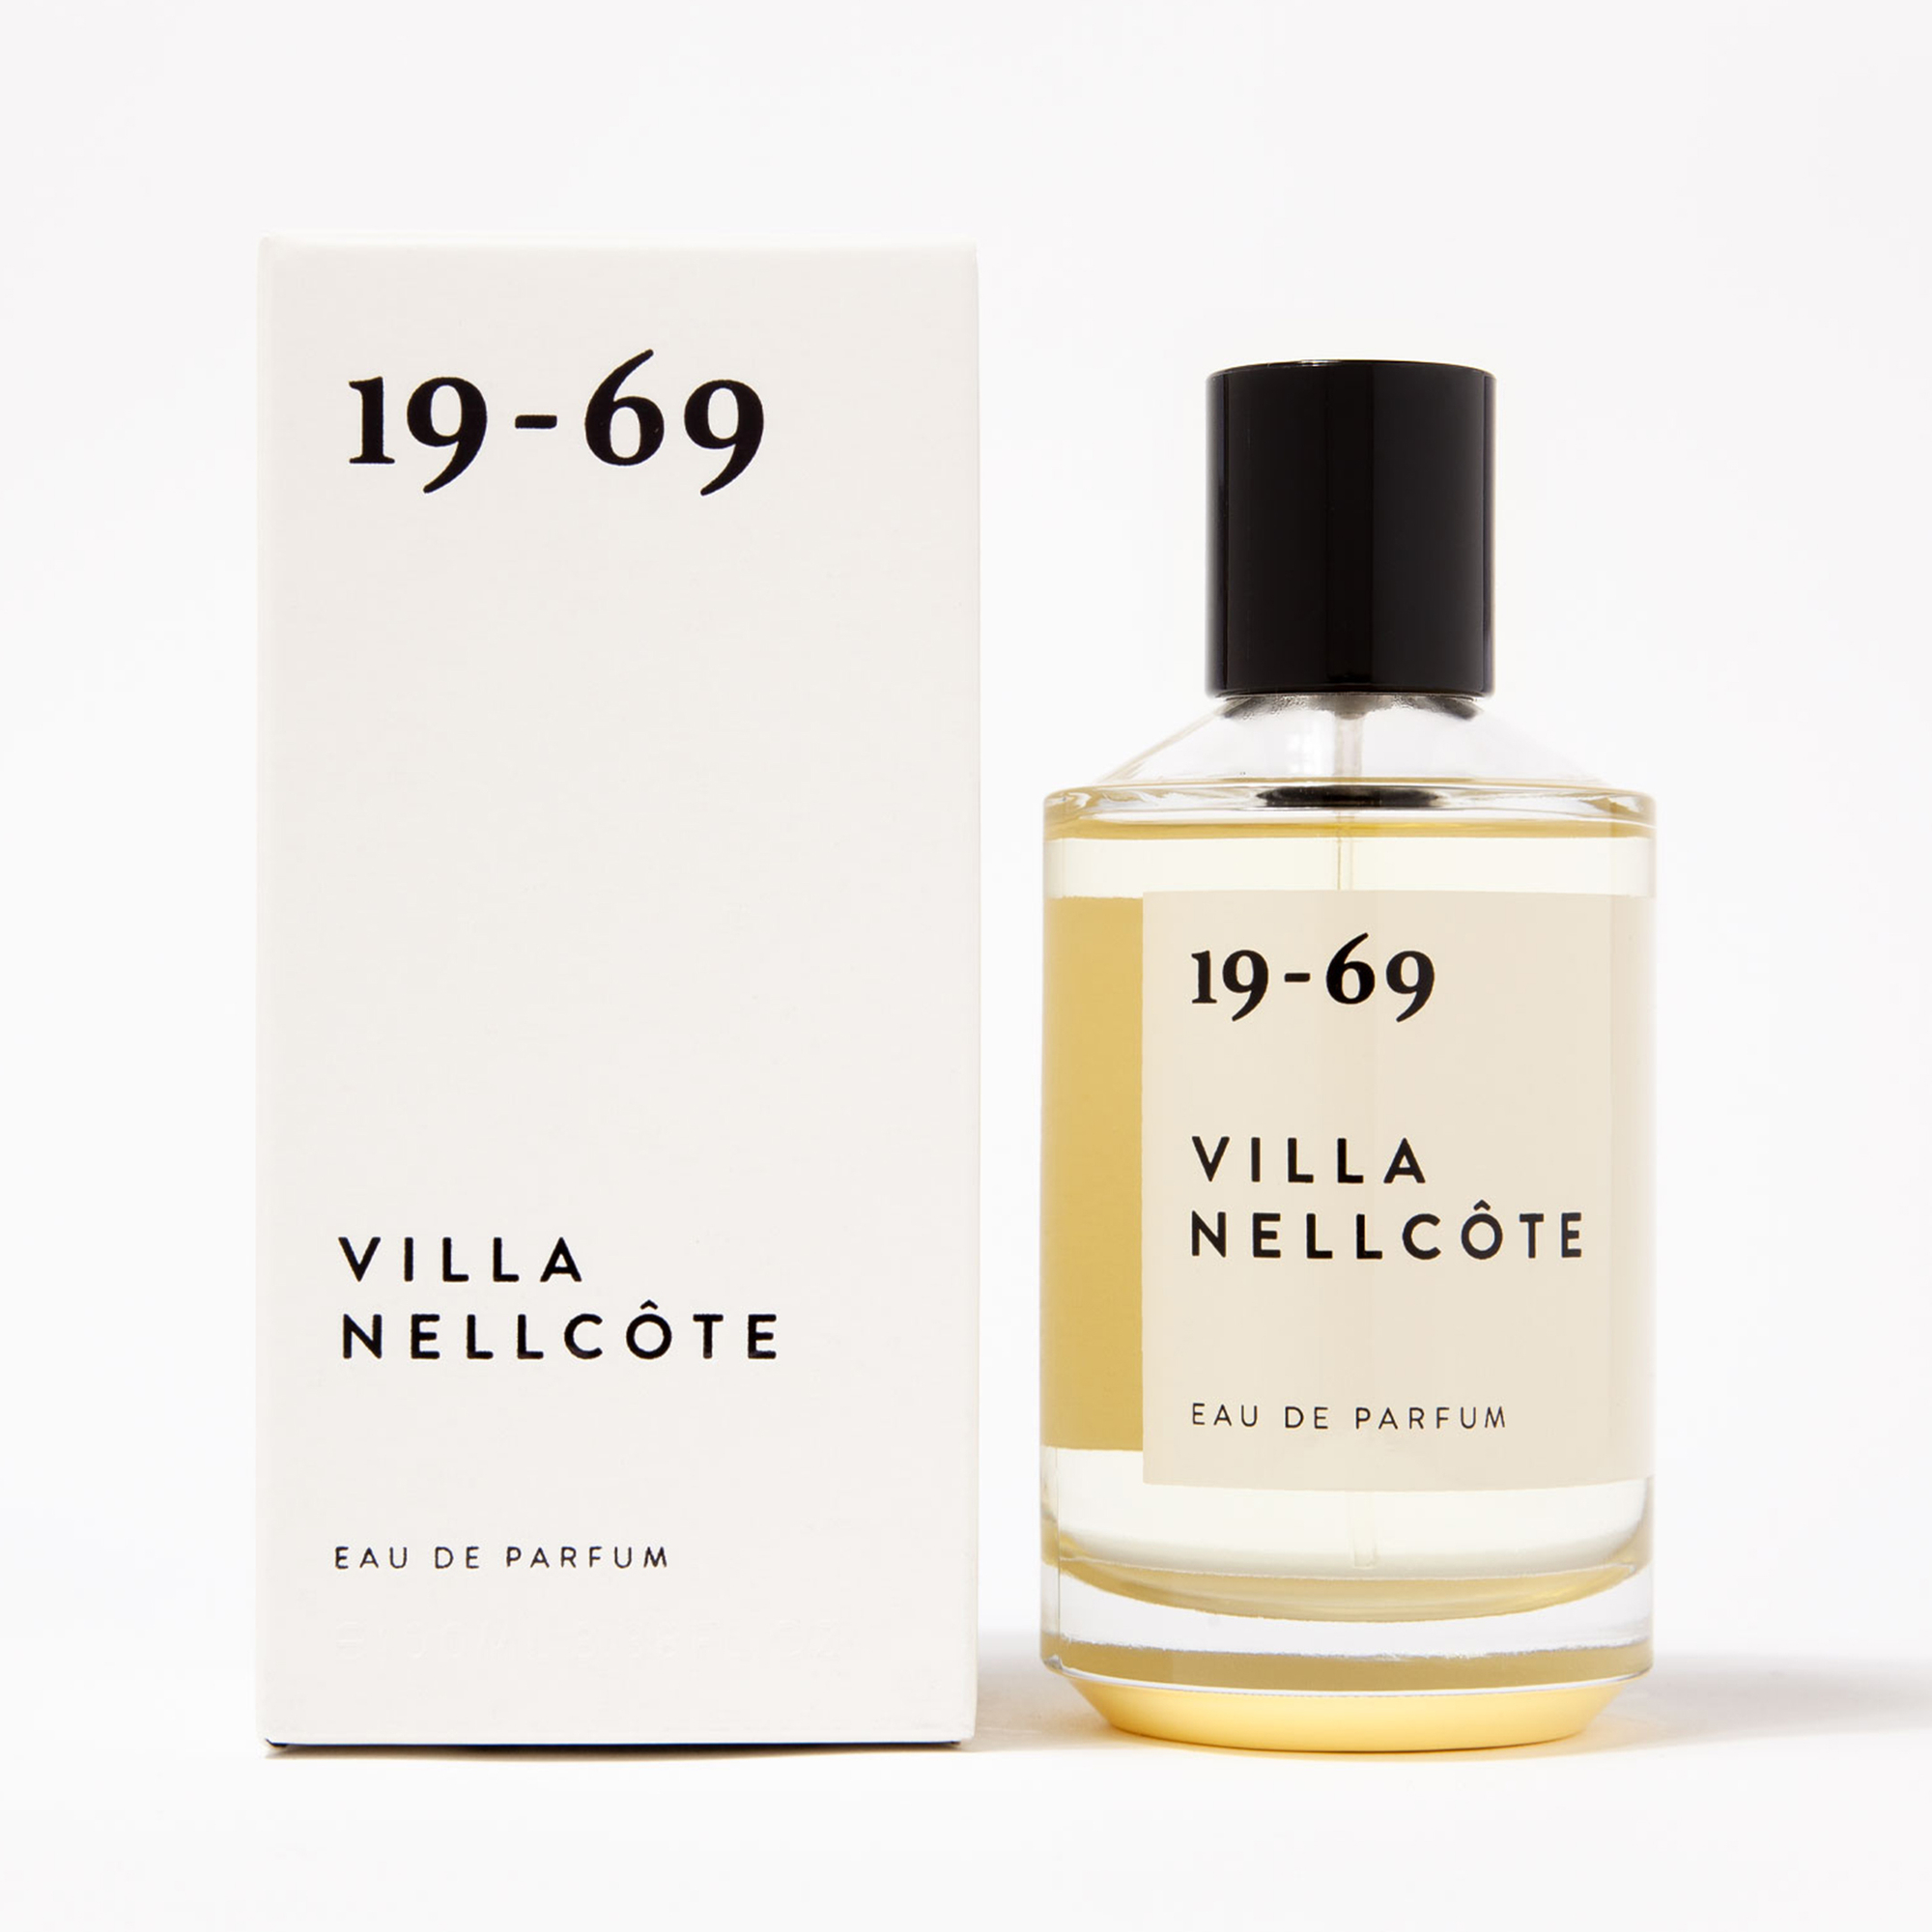 19-69 - Villa Nellcôte Eau de Parfum 100 ml